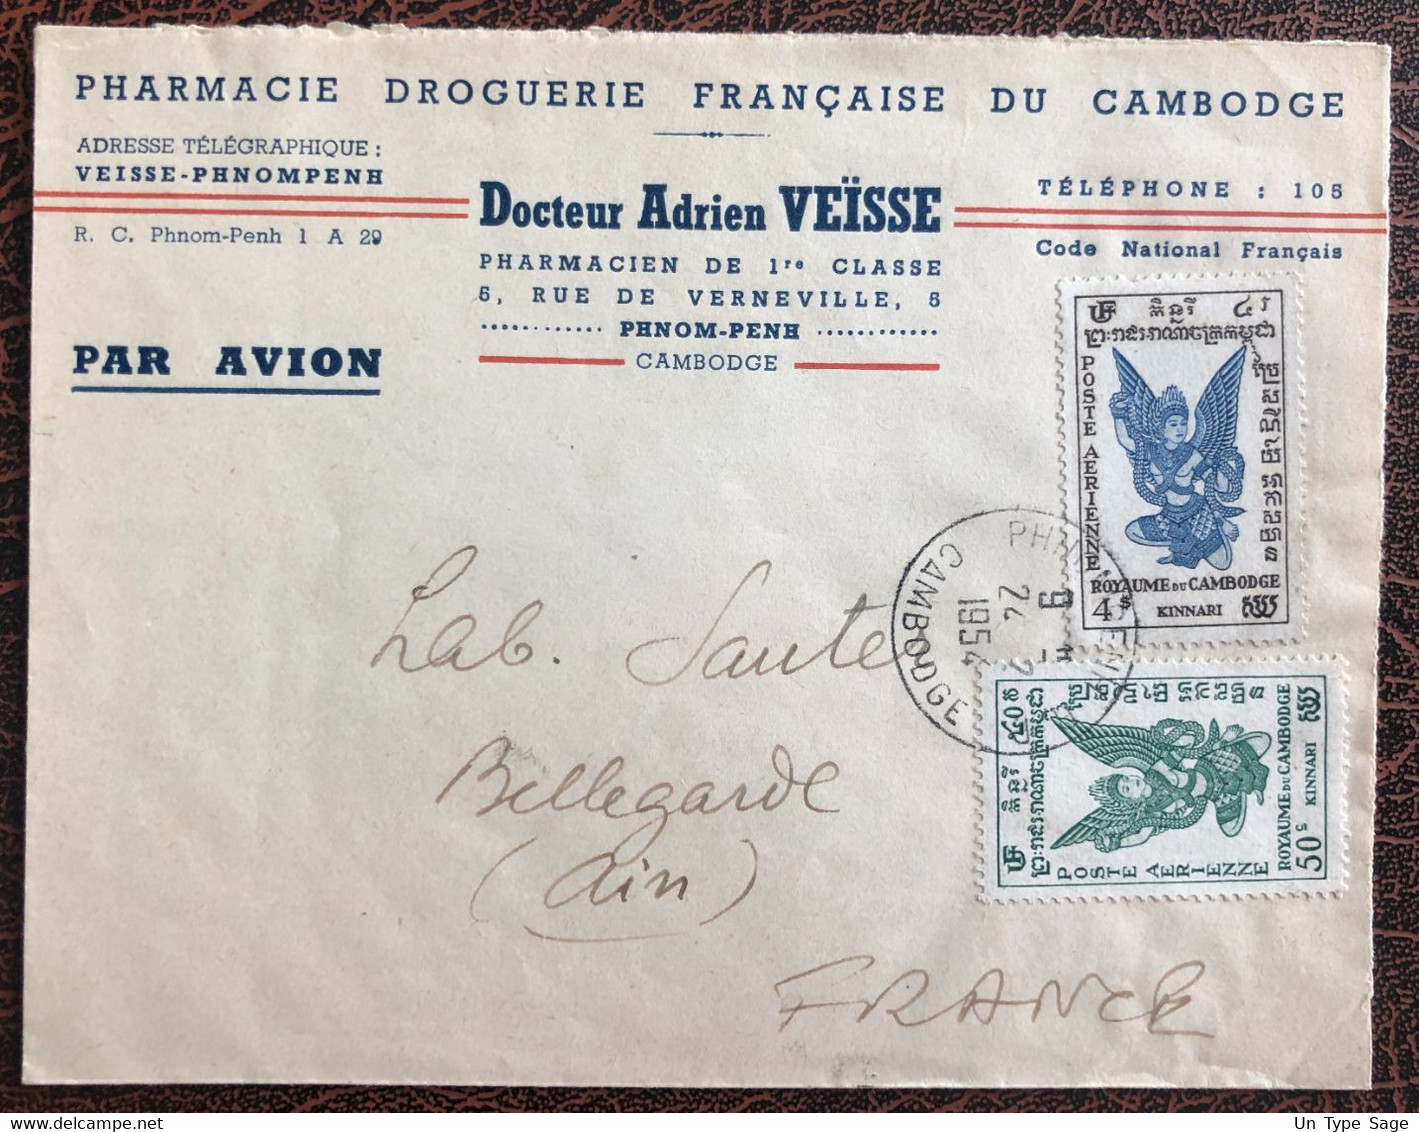 Cambodge, Divers PA Sur Enveloppe De Phnom Penh 24.2.1954 Pour La France - (B3868) - Kambodscha